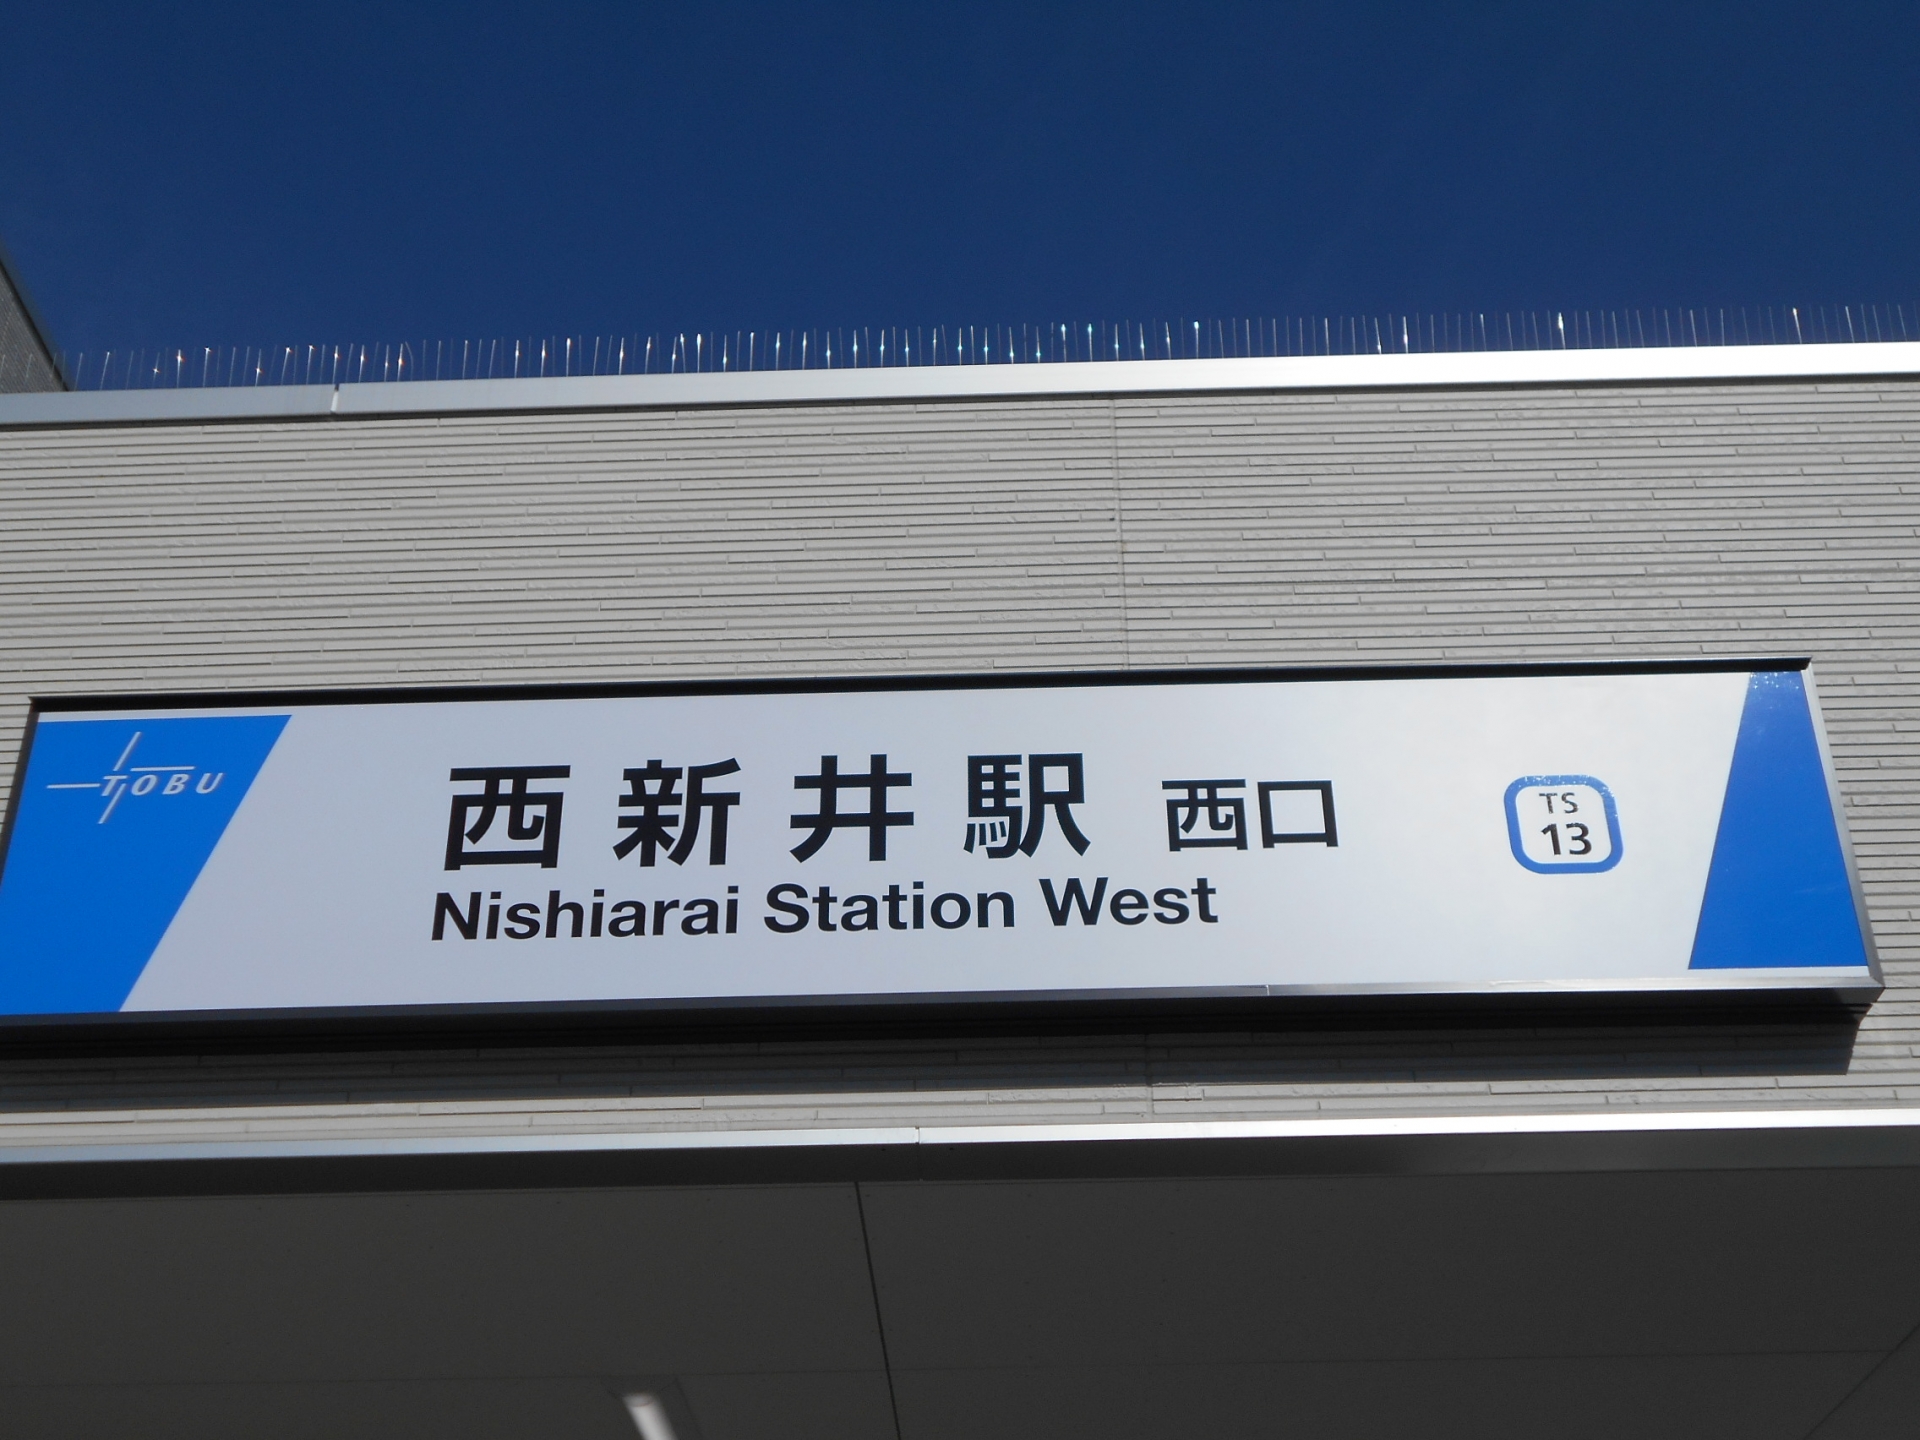 西新井駅西口周辺地区地区計画について解説します。地区計画整備前の状況についても触れます。